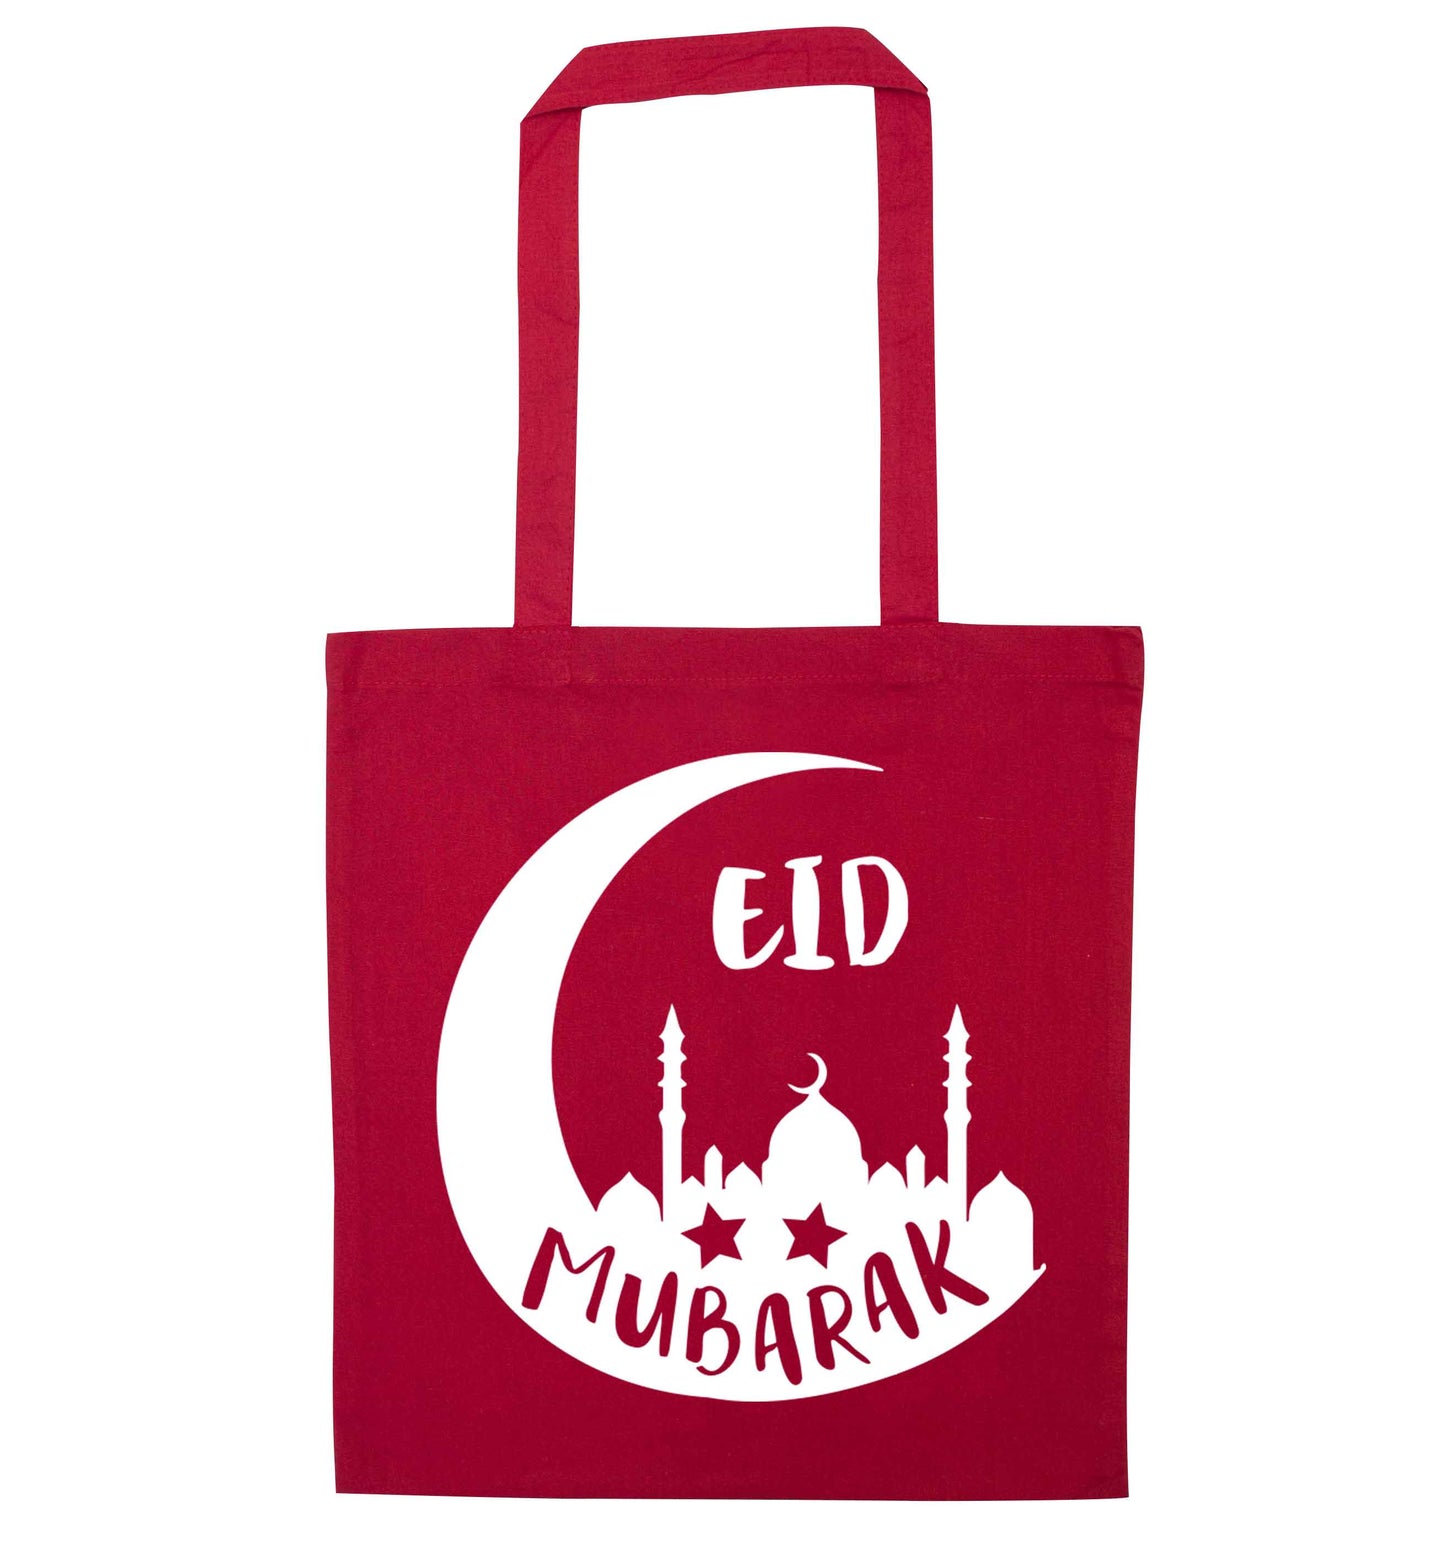 Eid mubarak red tote bag